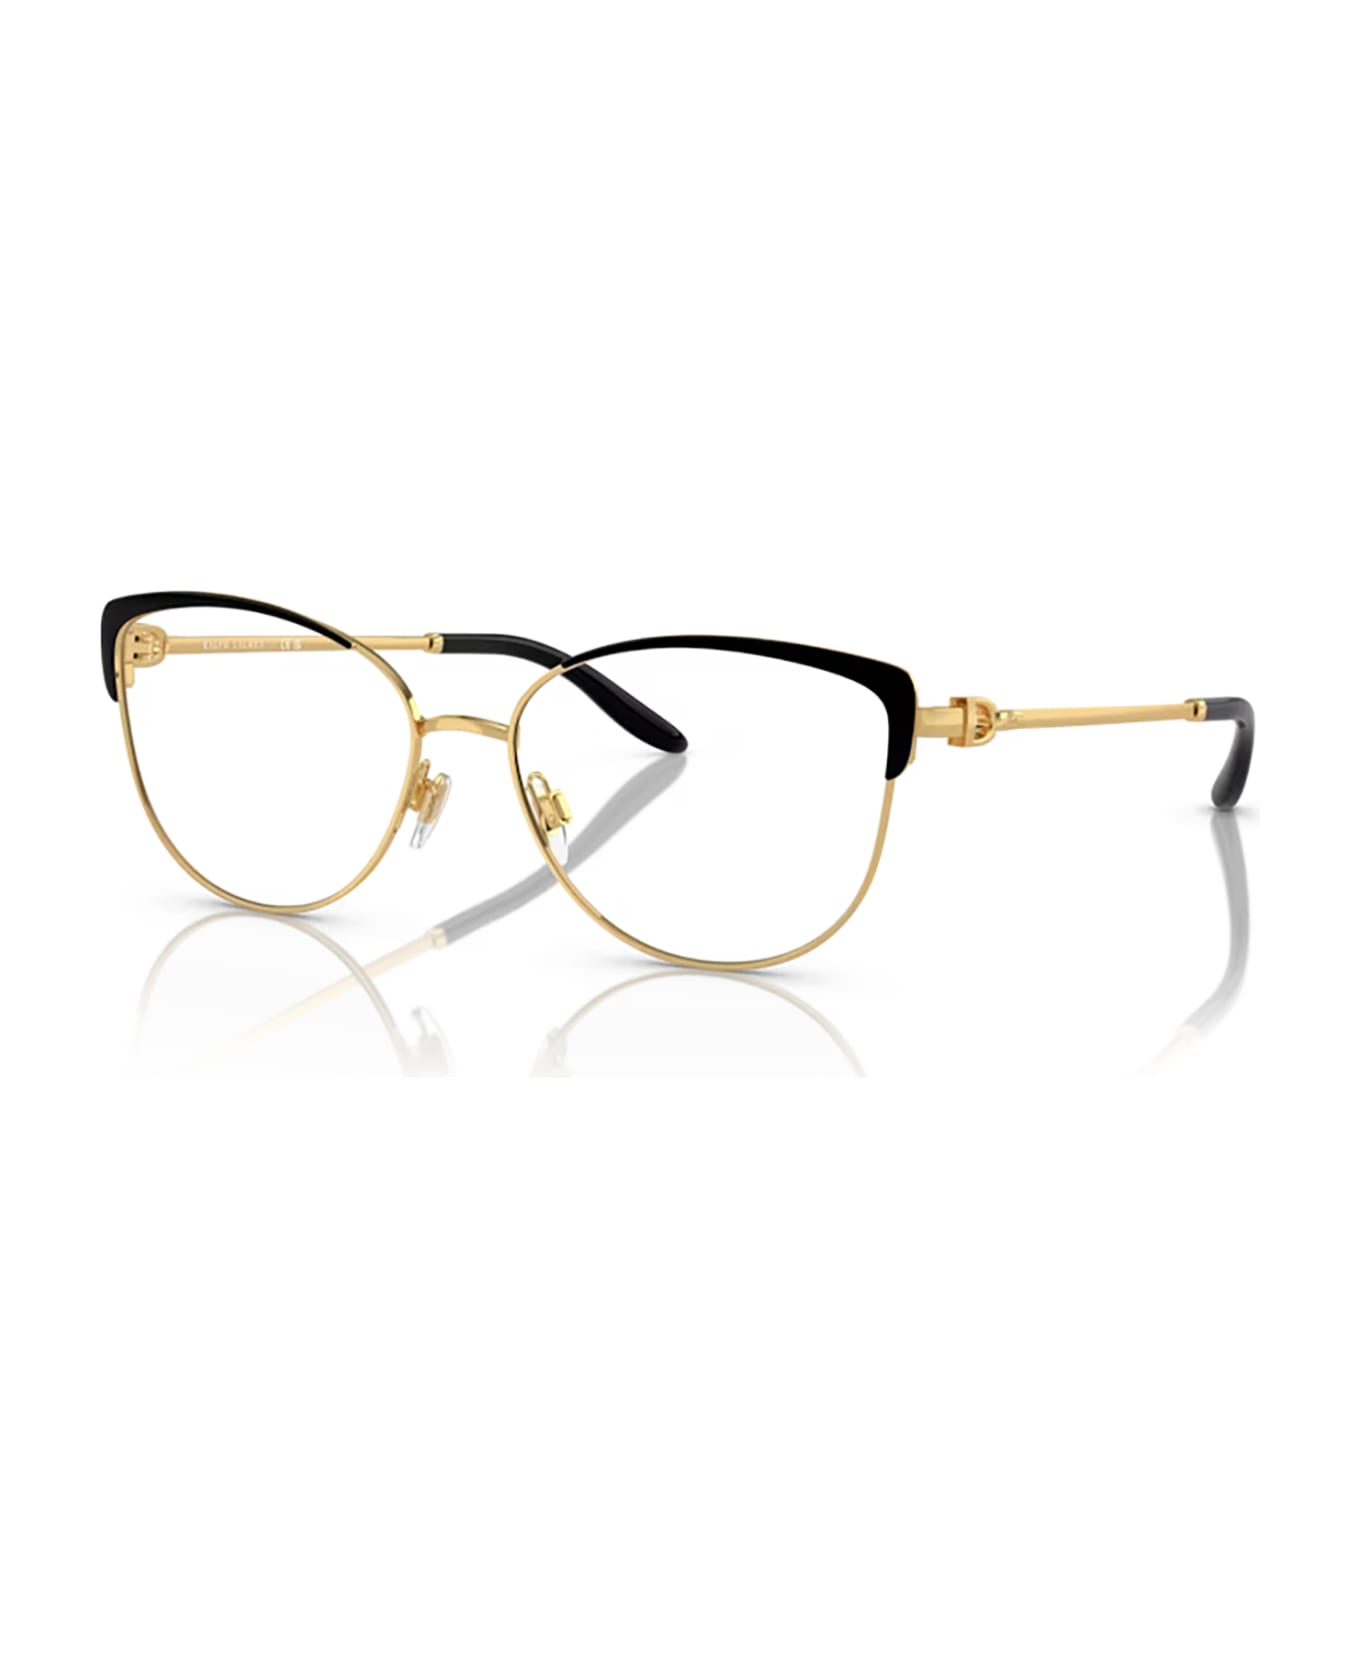 Ralph Lauren Rl5123 Black / Gold Glasses - Black / Gold アイウェア